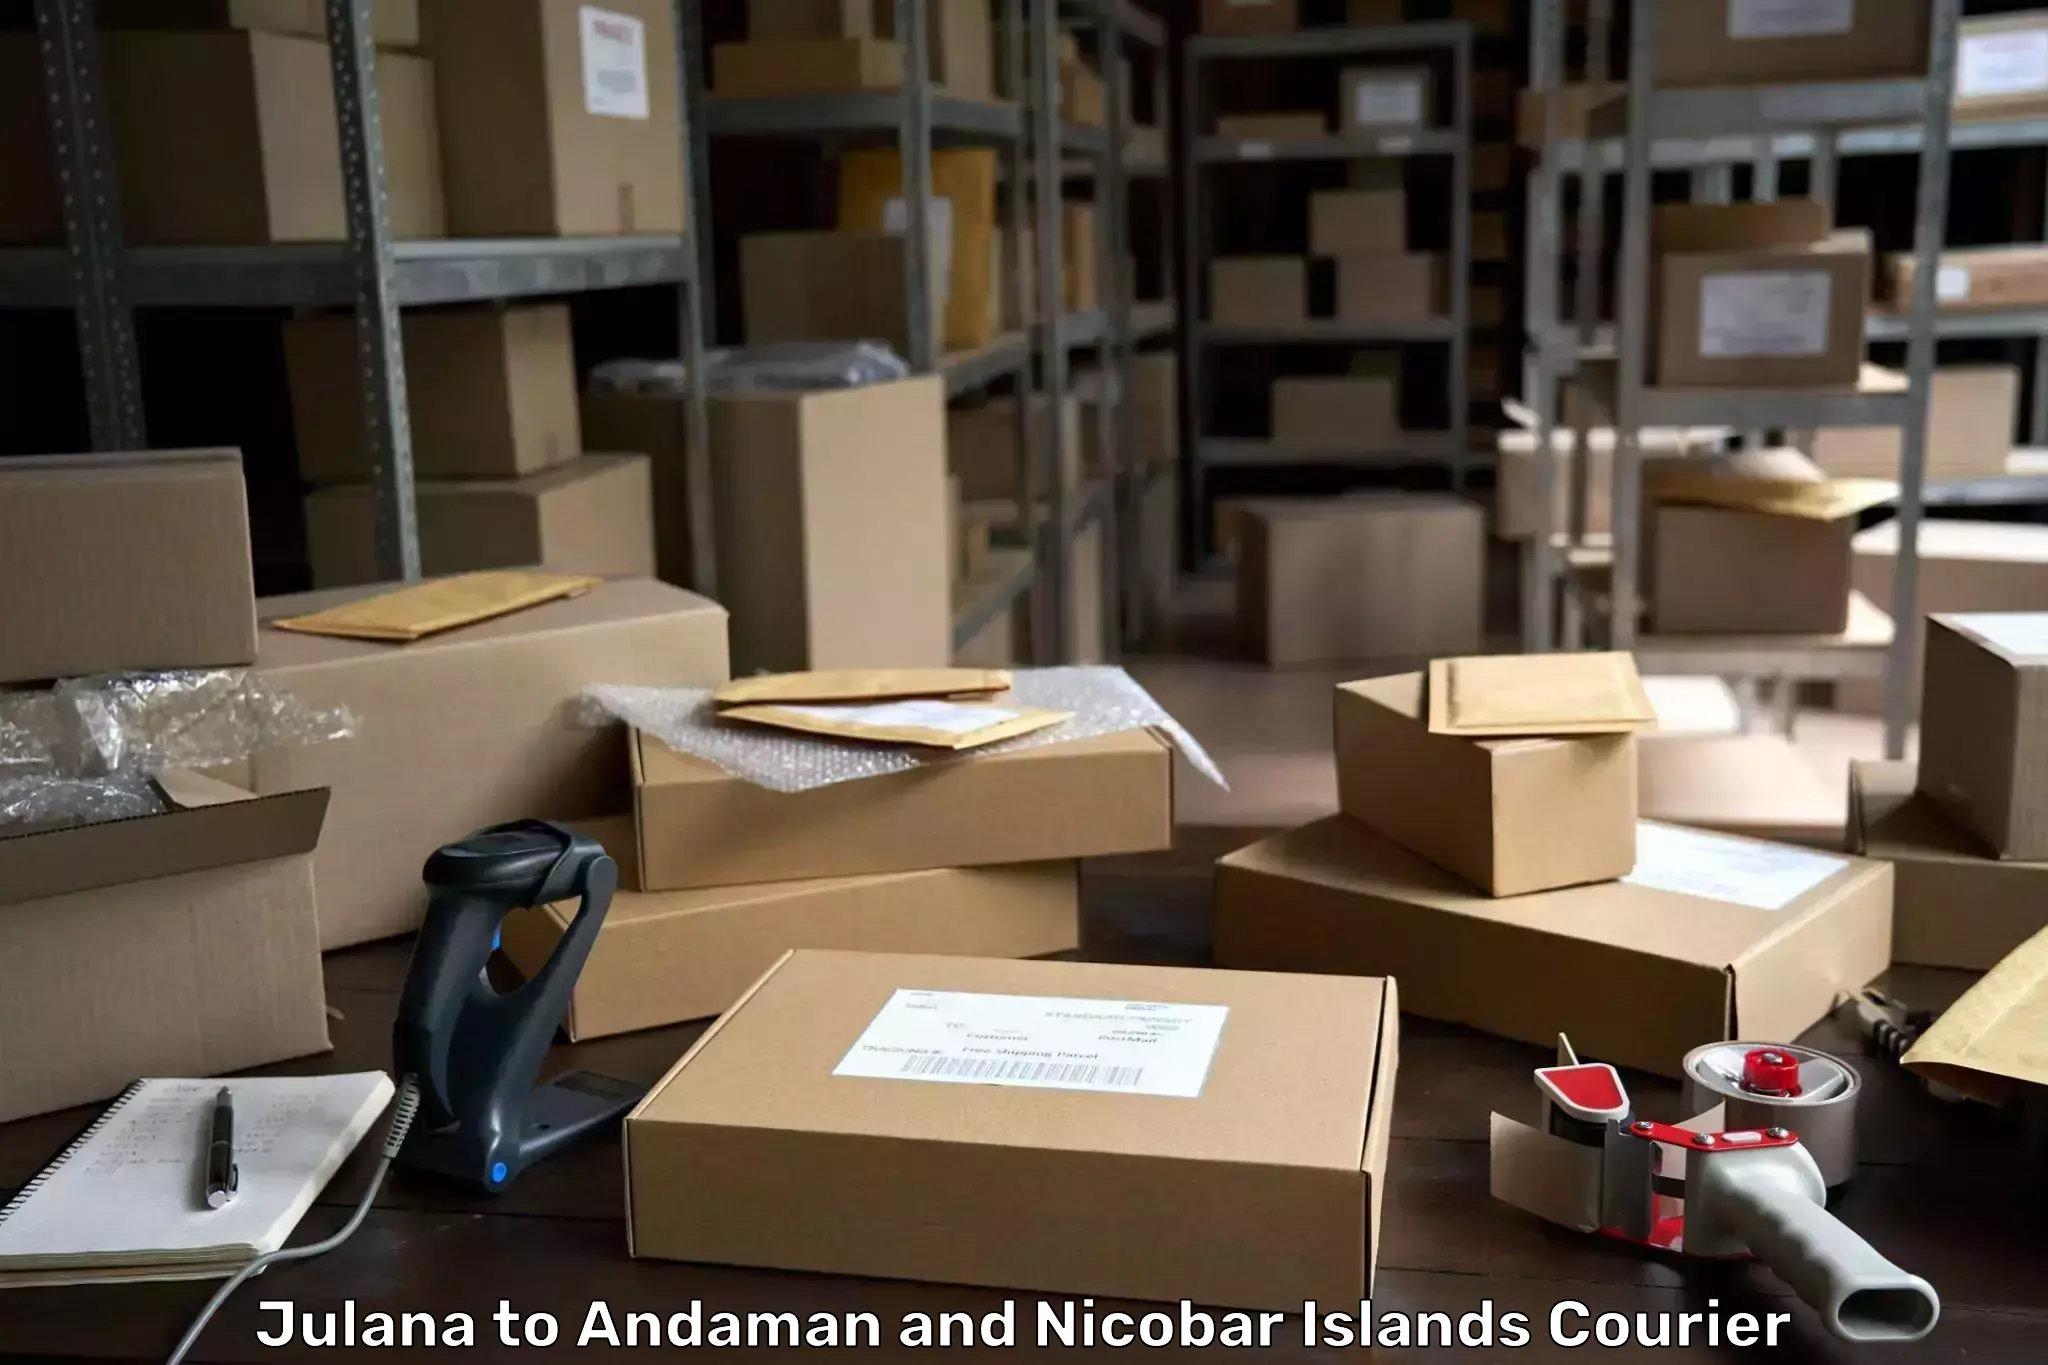 Urban courier service Julana to Andaman and Nicobar Islands